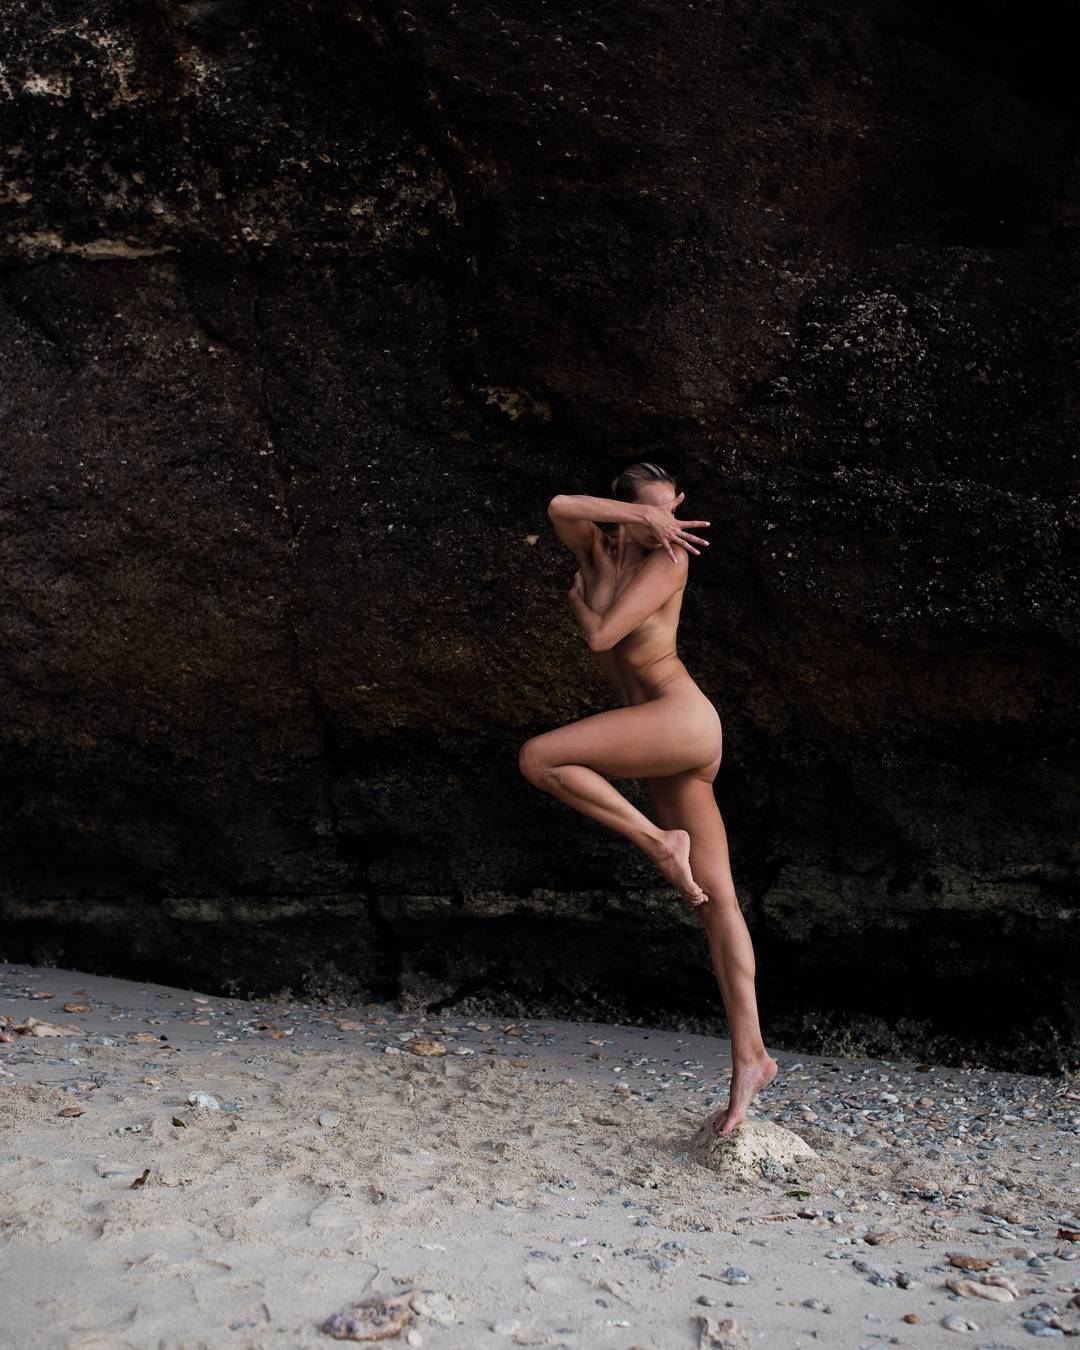 Гола йога: спортсменка підкорила Instagram відвертими фотографіями